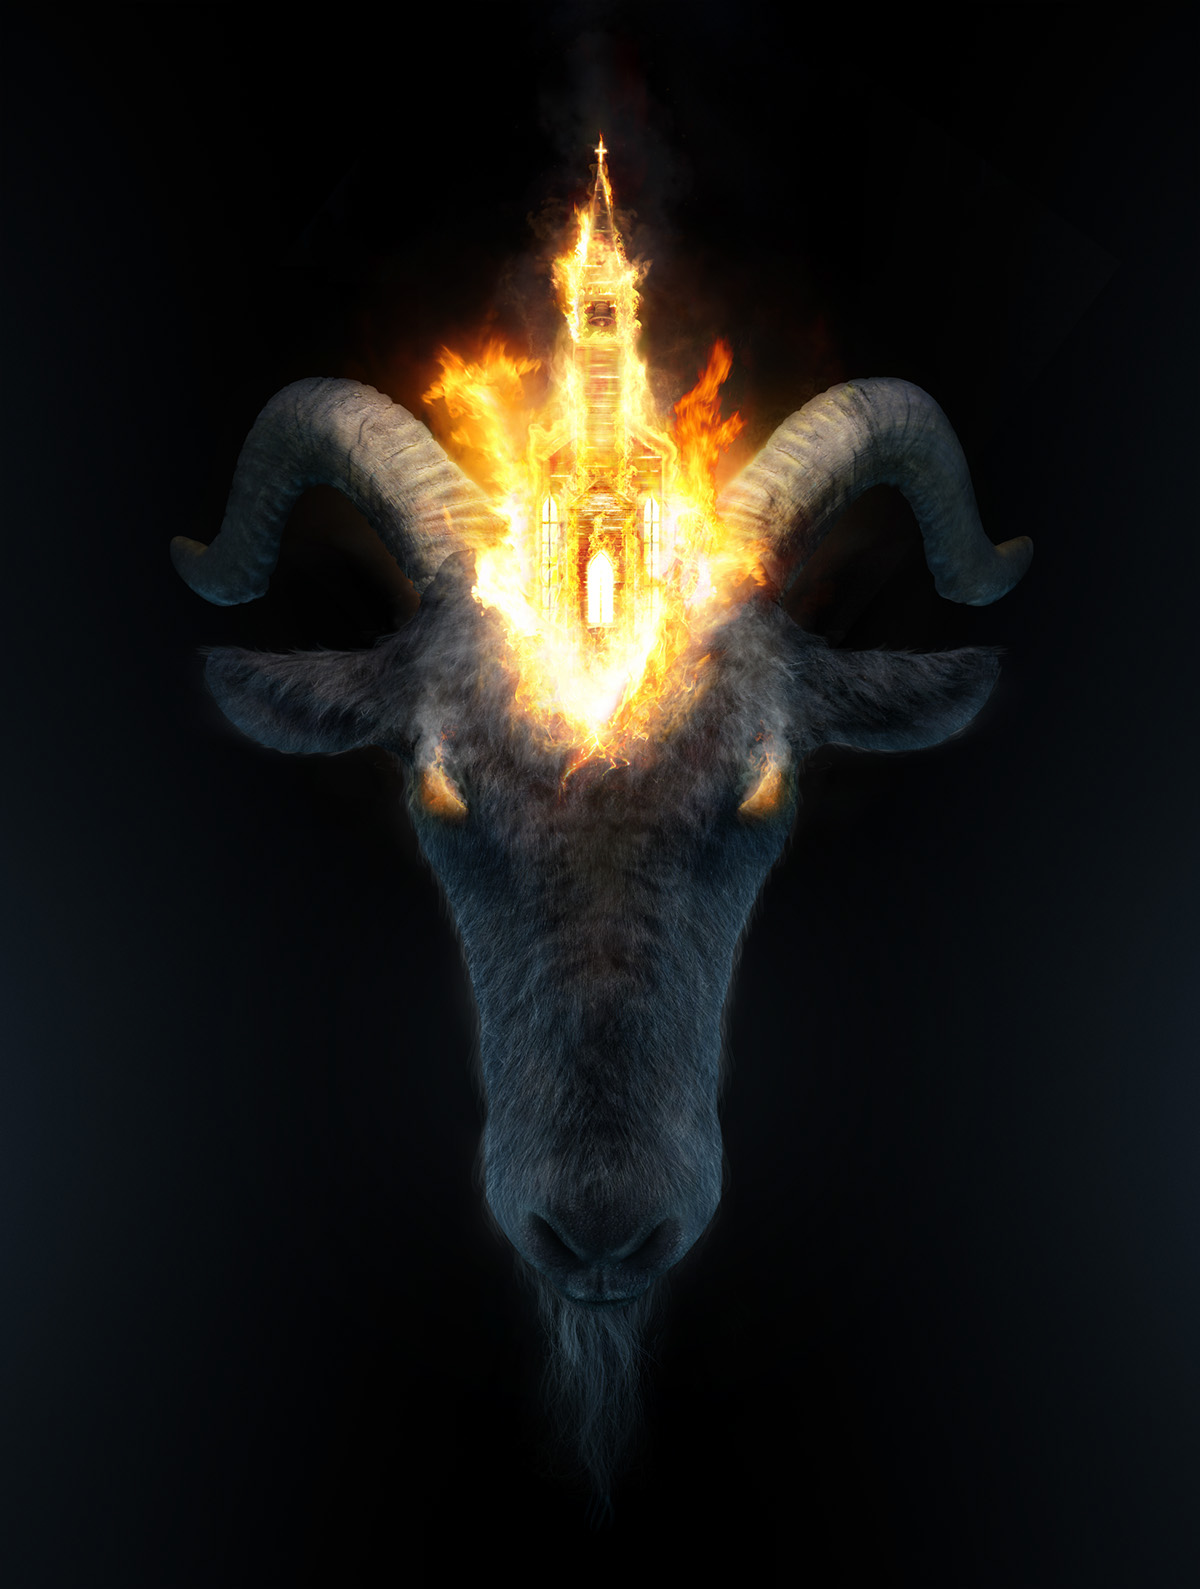 church fire goat religion horns theology poster 3D burn